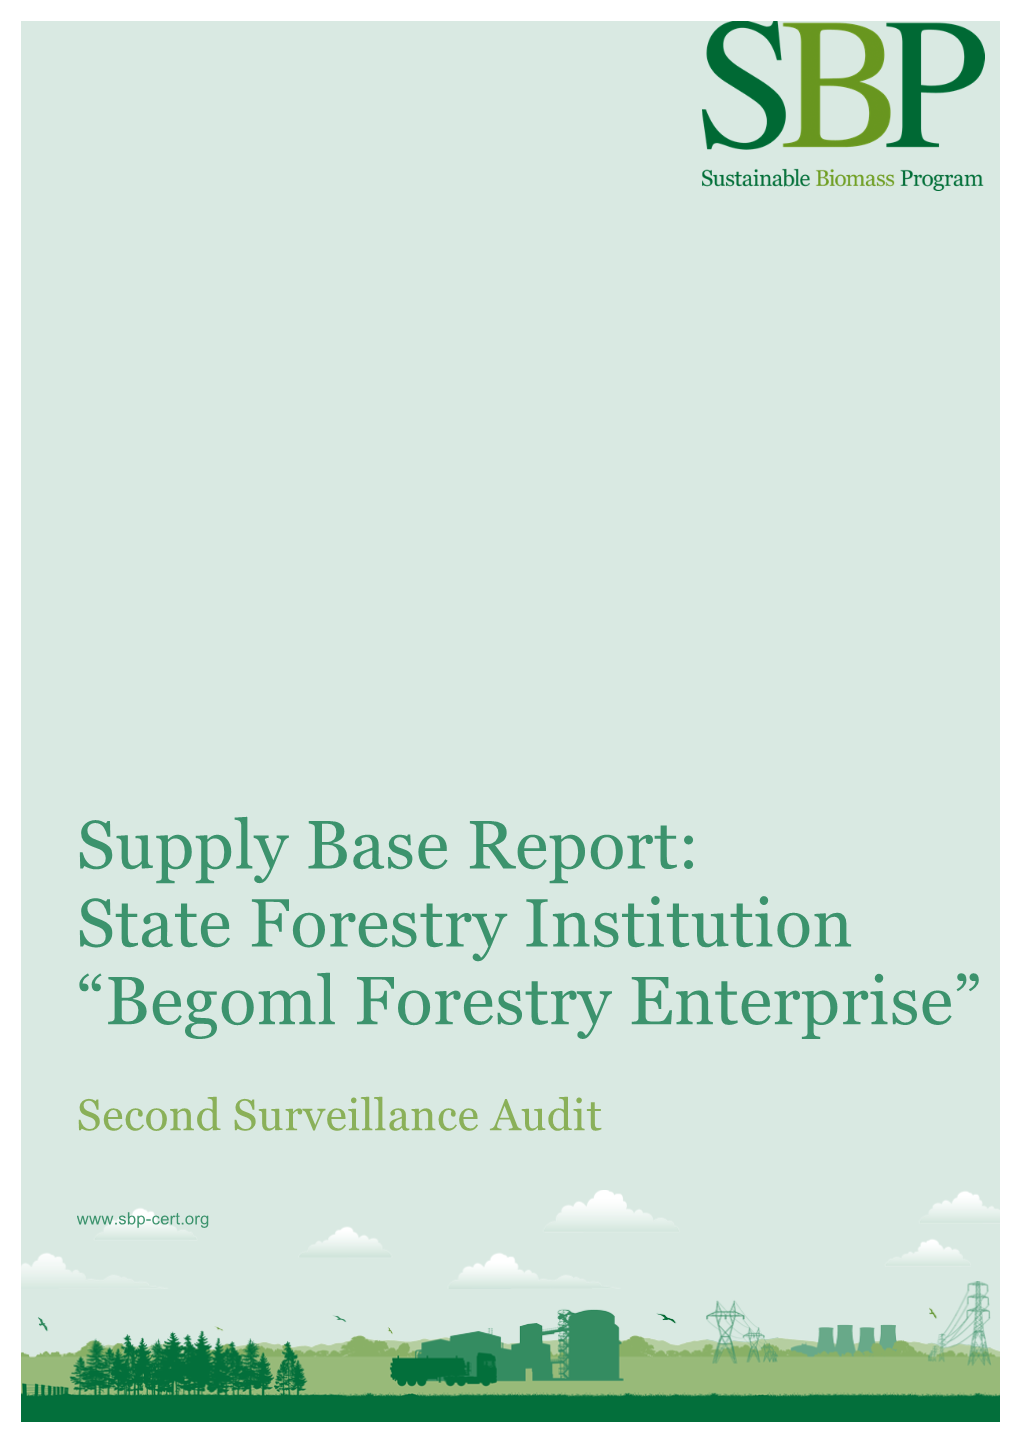 Supply Base Report V1.2 Second Surveillance Audit Begoml Forestry